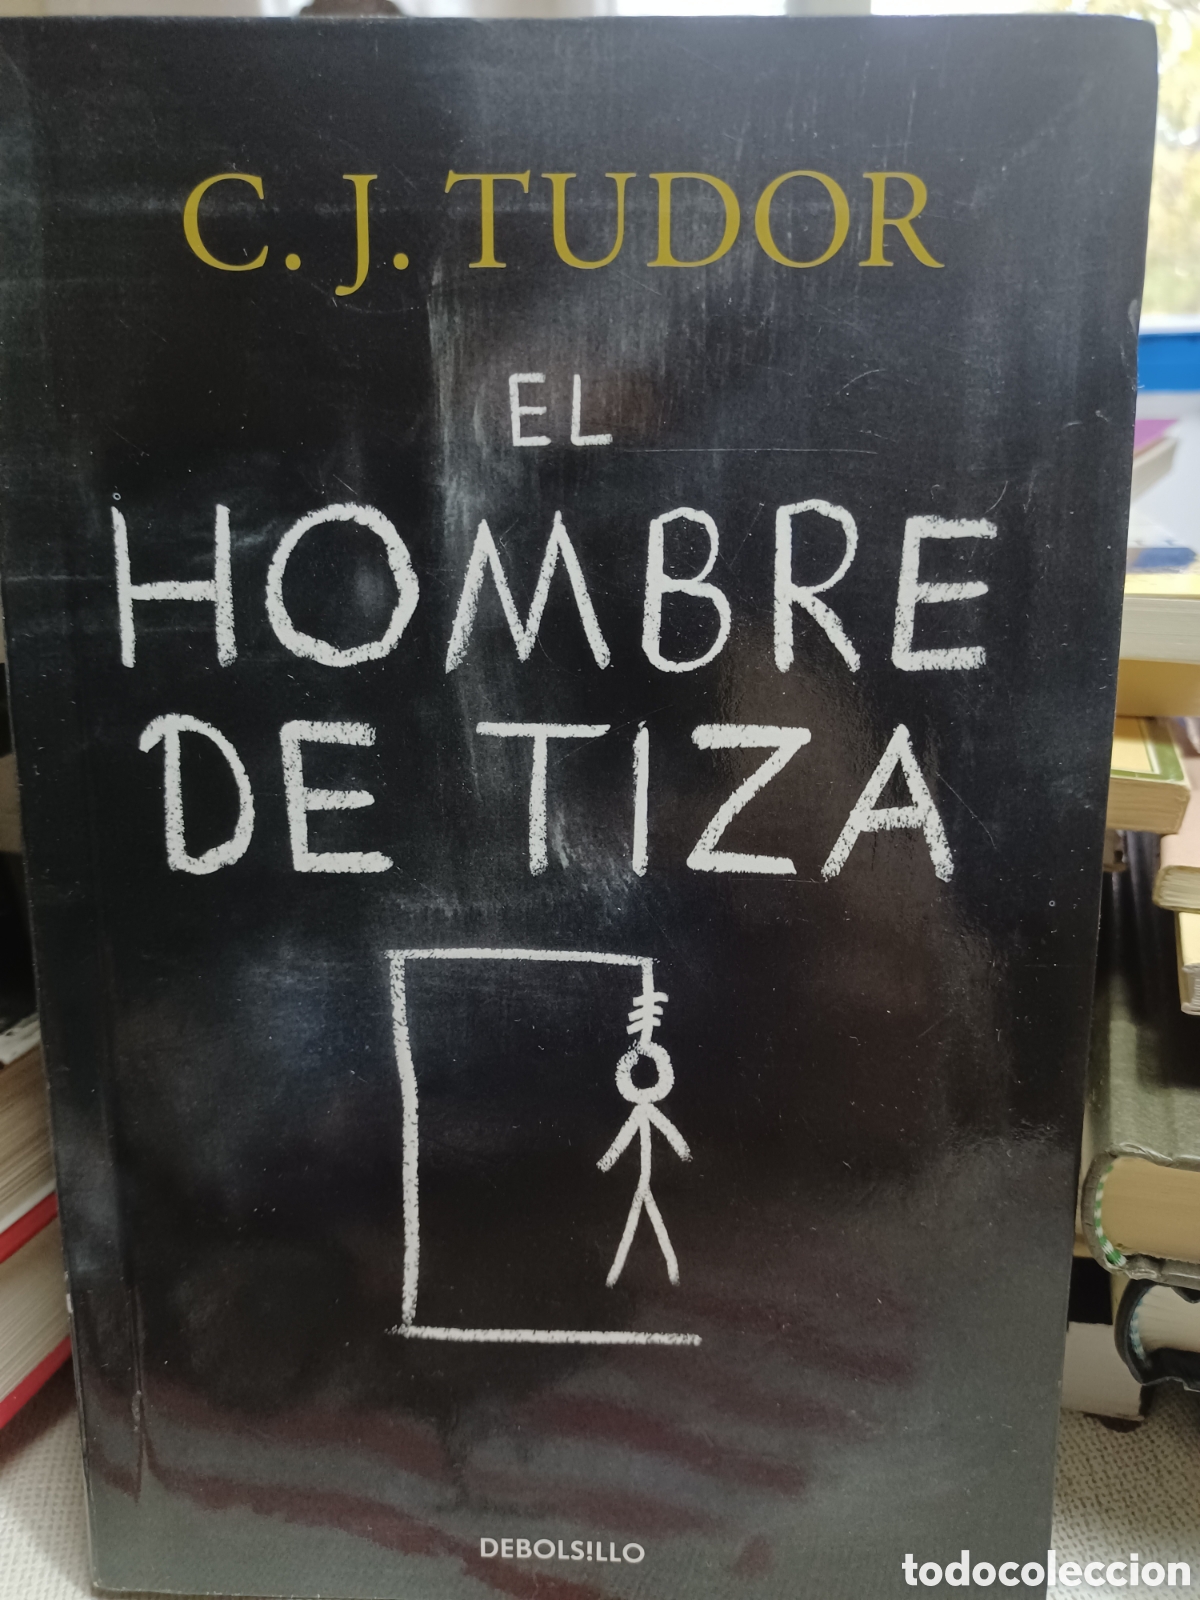 EL HOMBRE DE TIZA, C. J. TUDOR, DEBOLSILLO